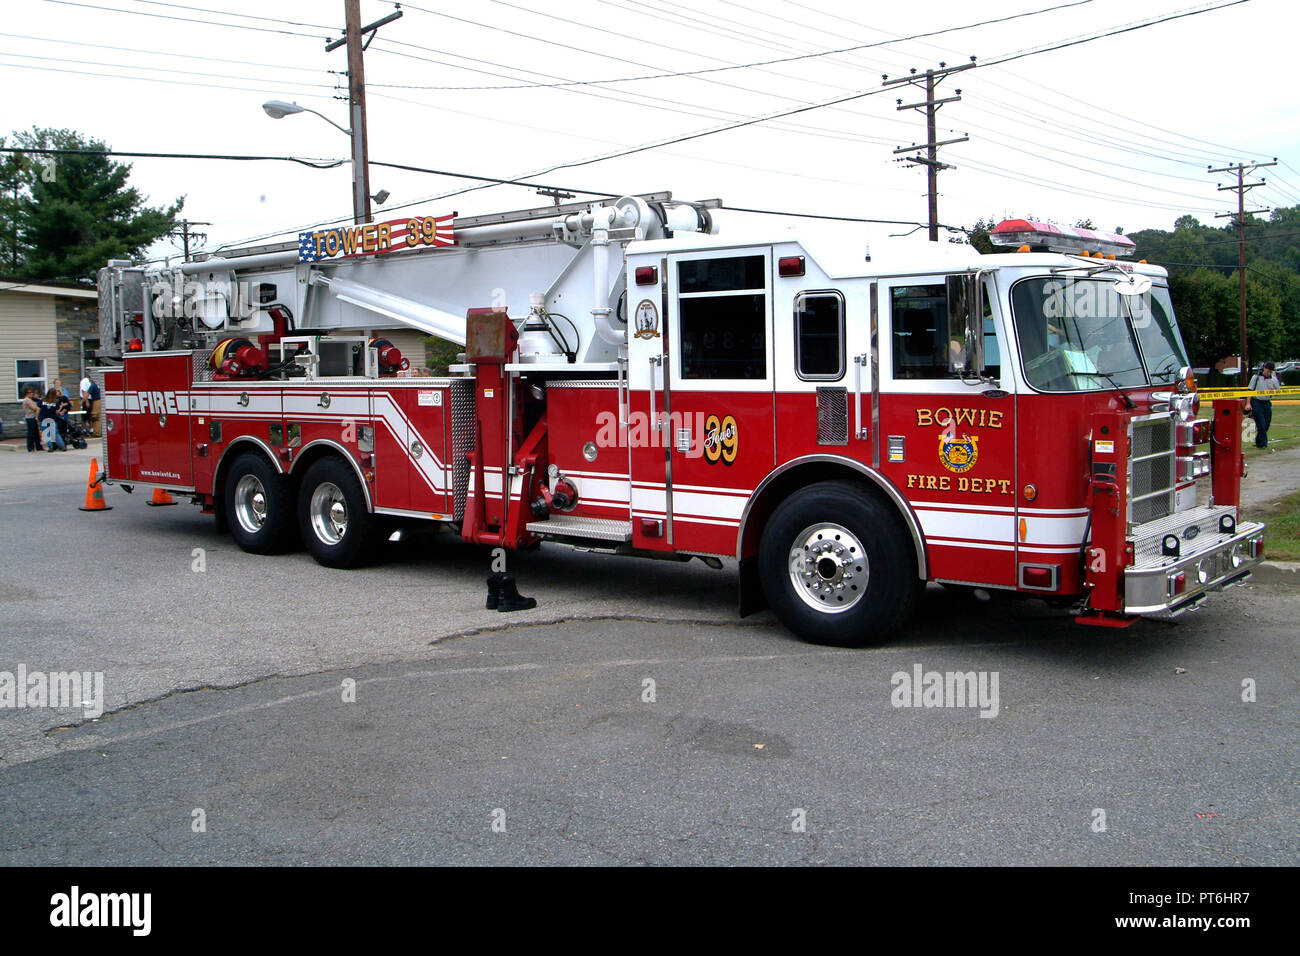 Un camión de bomberos Torre en Bowie, MD Foto de stock